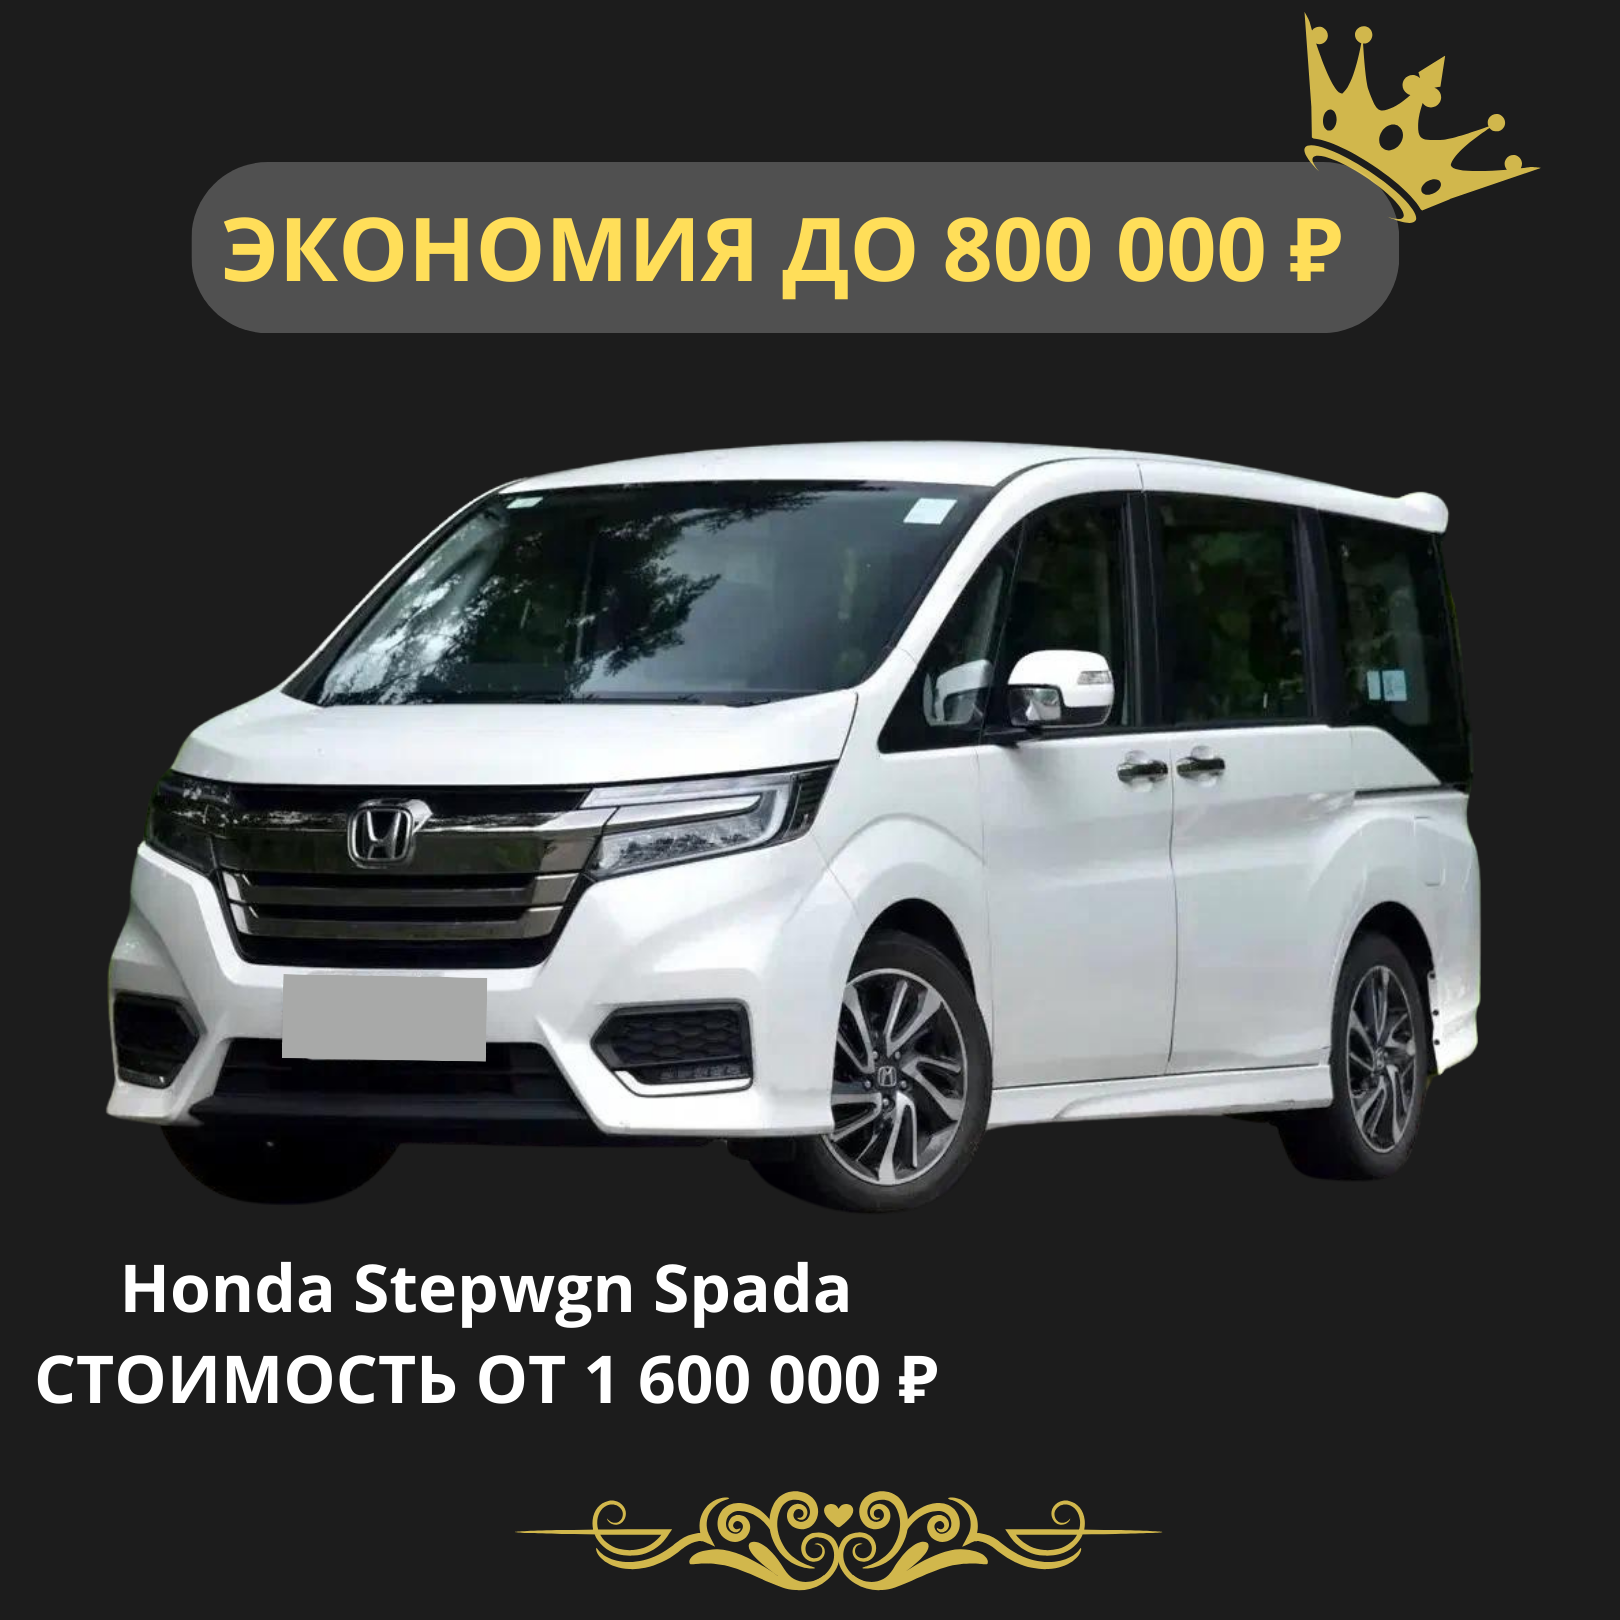 Honda Stepwgn Spada. Стоимость от 1600000 рублей